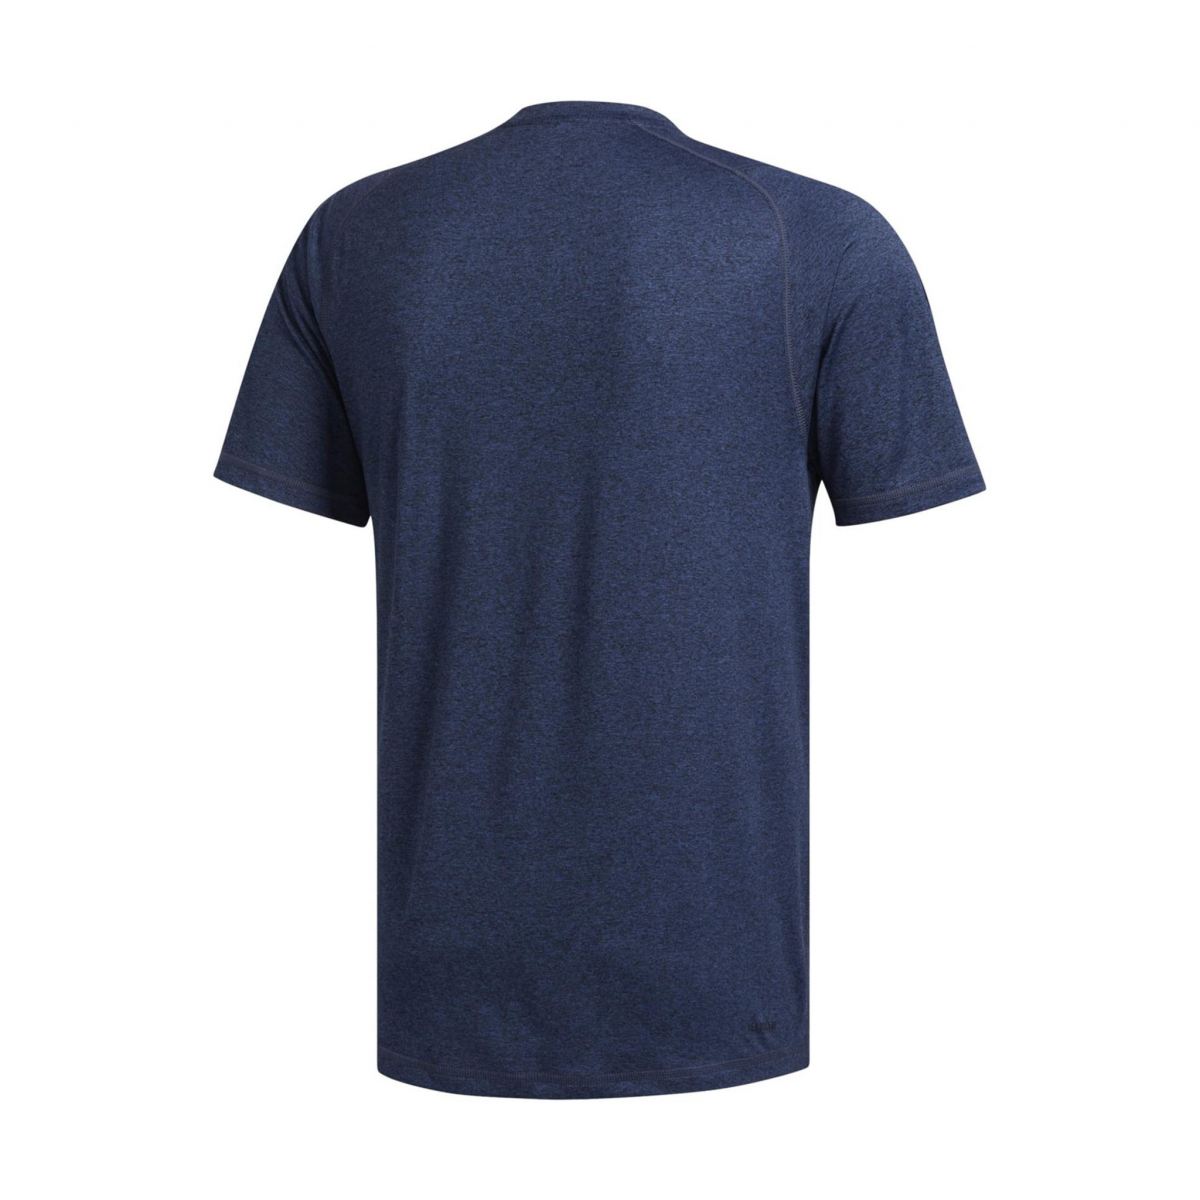 Flo FL_SPR X UL HEA Erkek Kısa Kol T-Shirt. 1